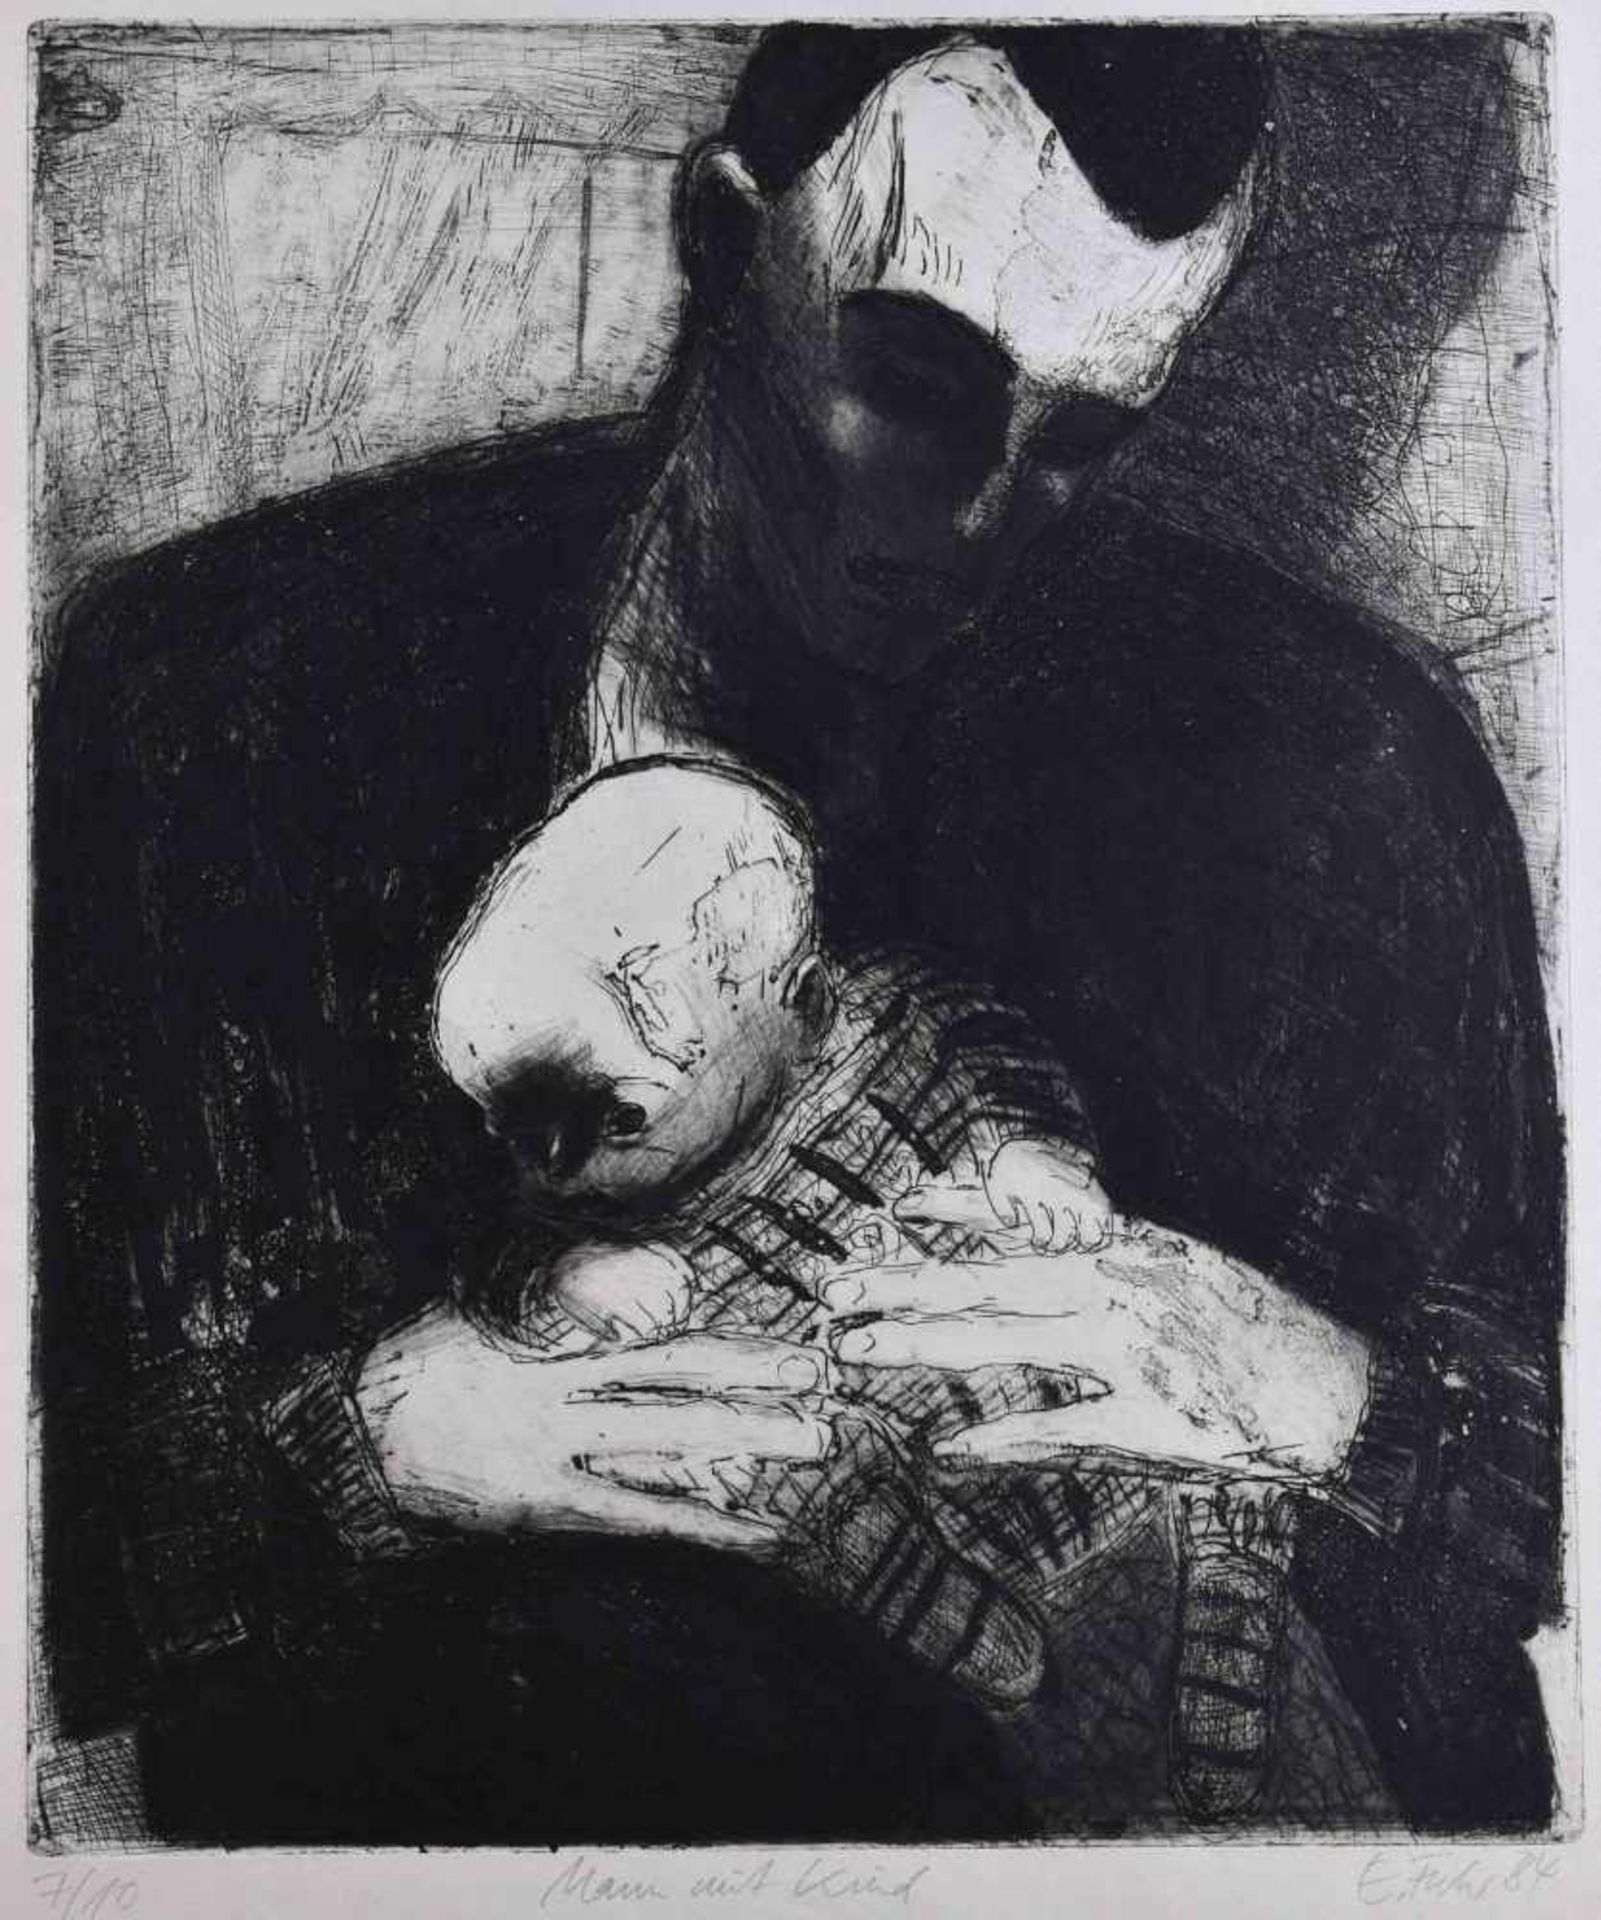 Ellen FUHR (1958-2017)"Mann mit Kind"Grafik-Aquatintaradierung auf Bütten, Blattgröße 73 cm x 60